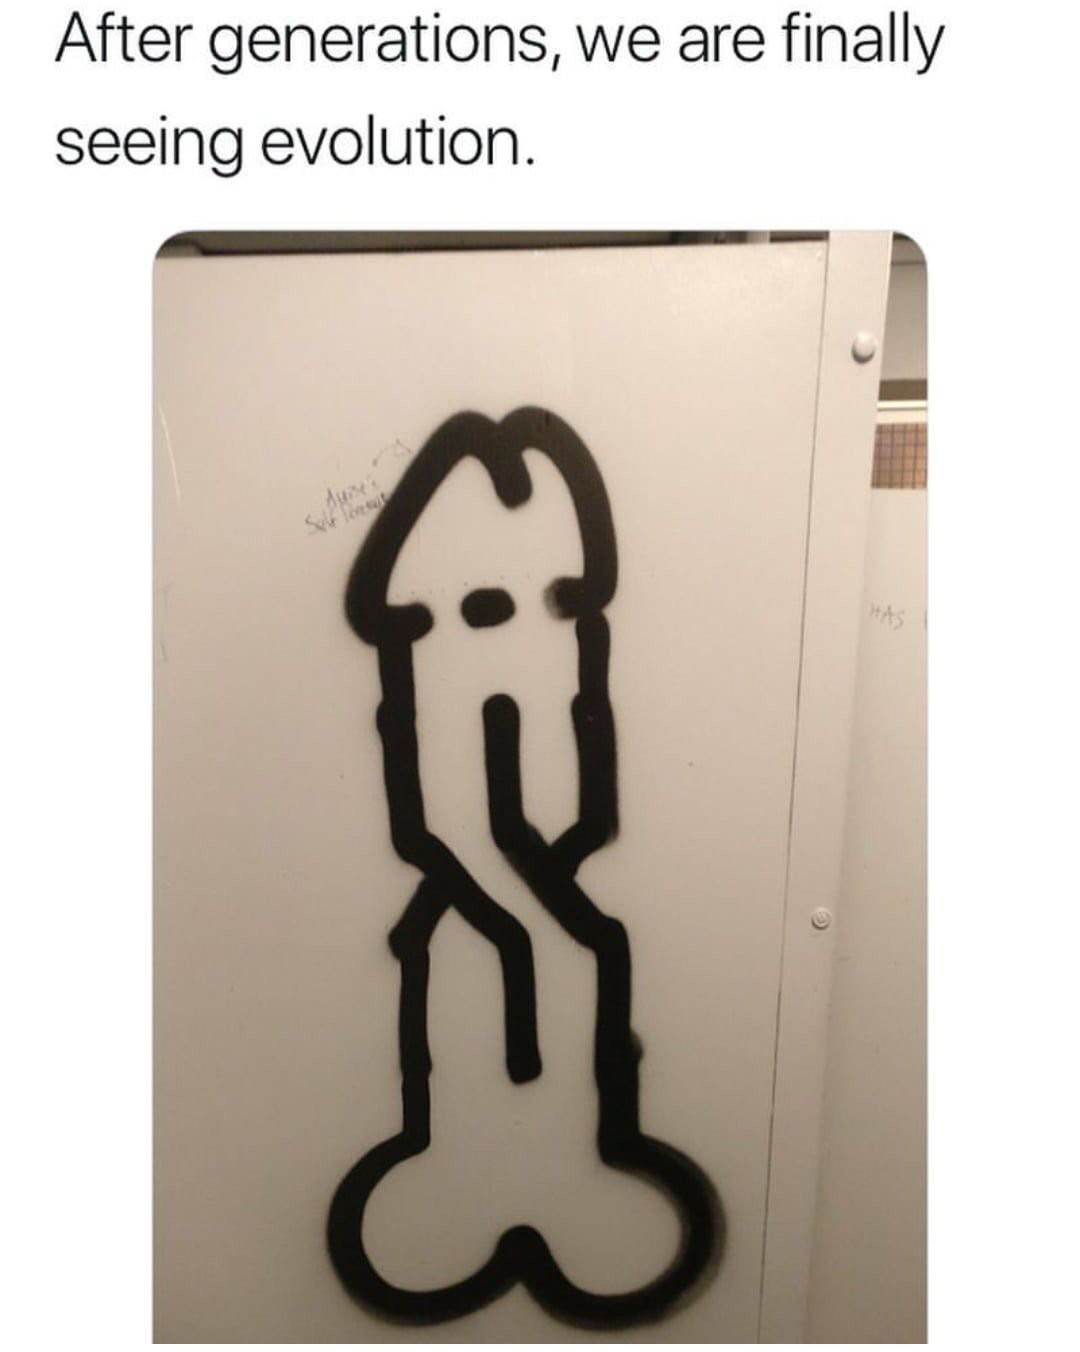 Evolution - meme